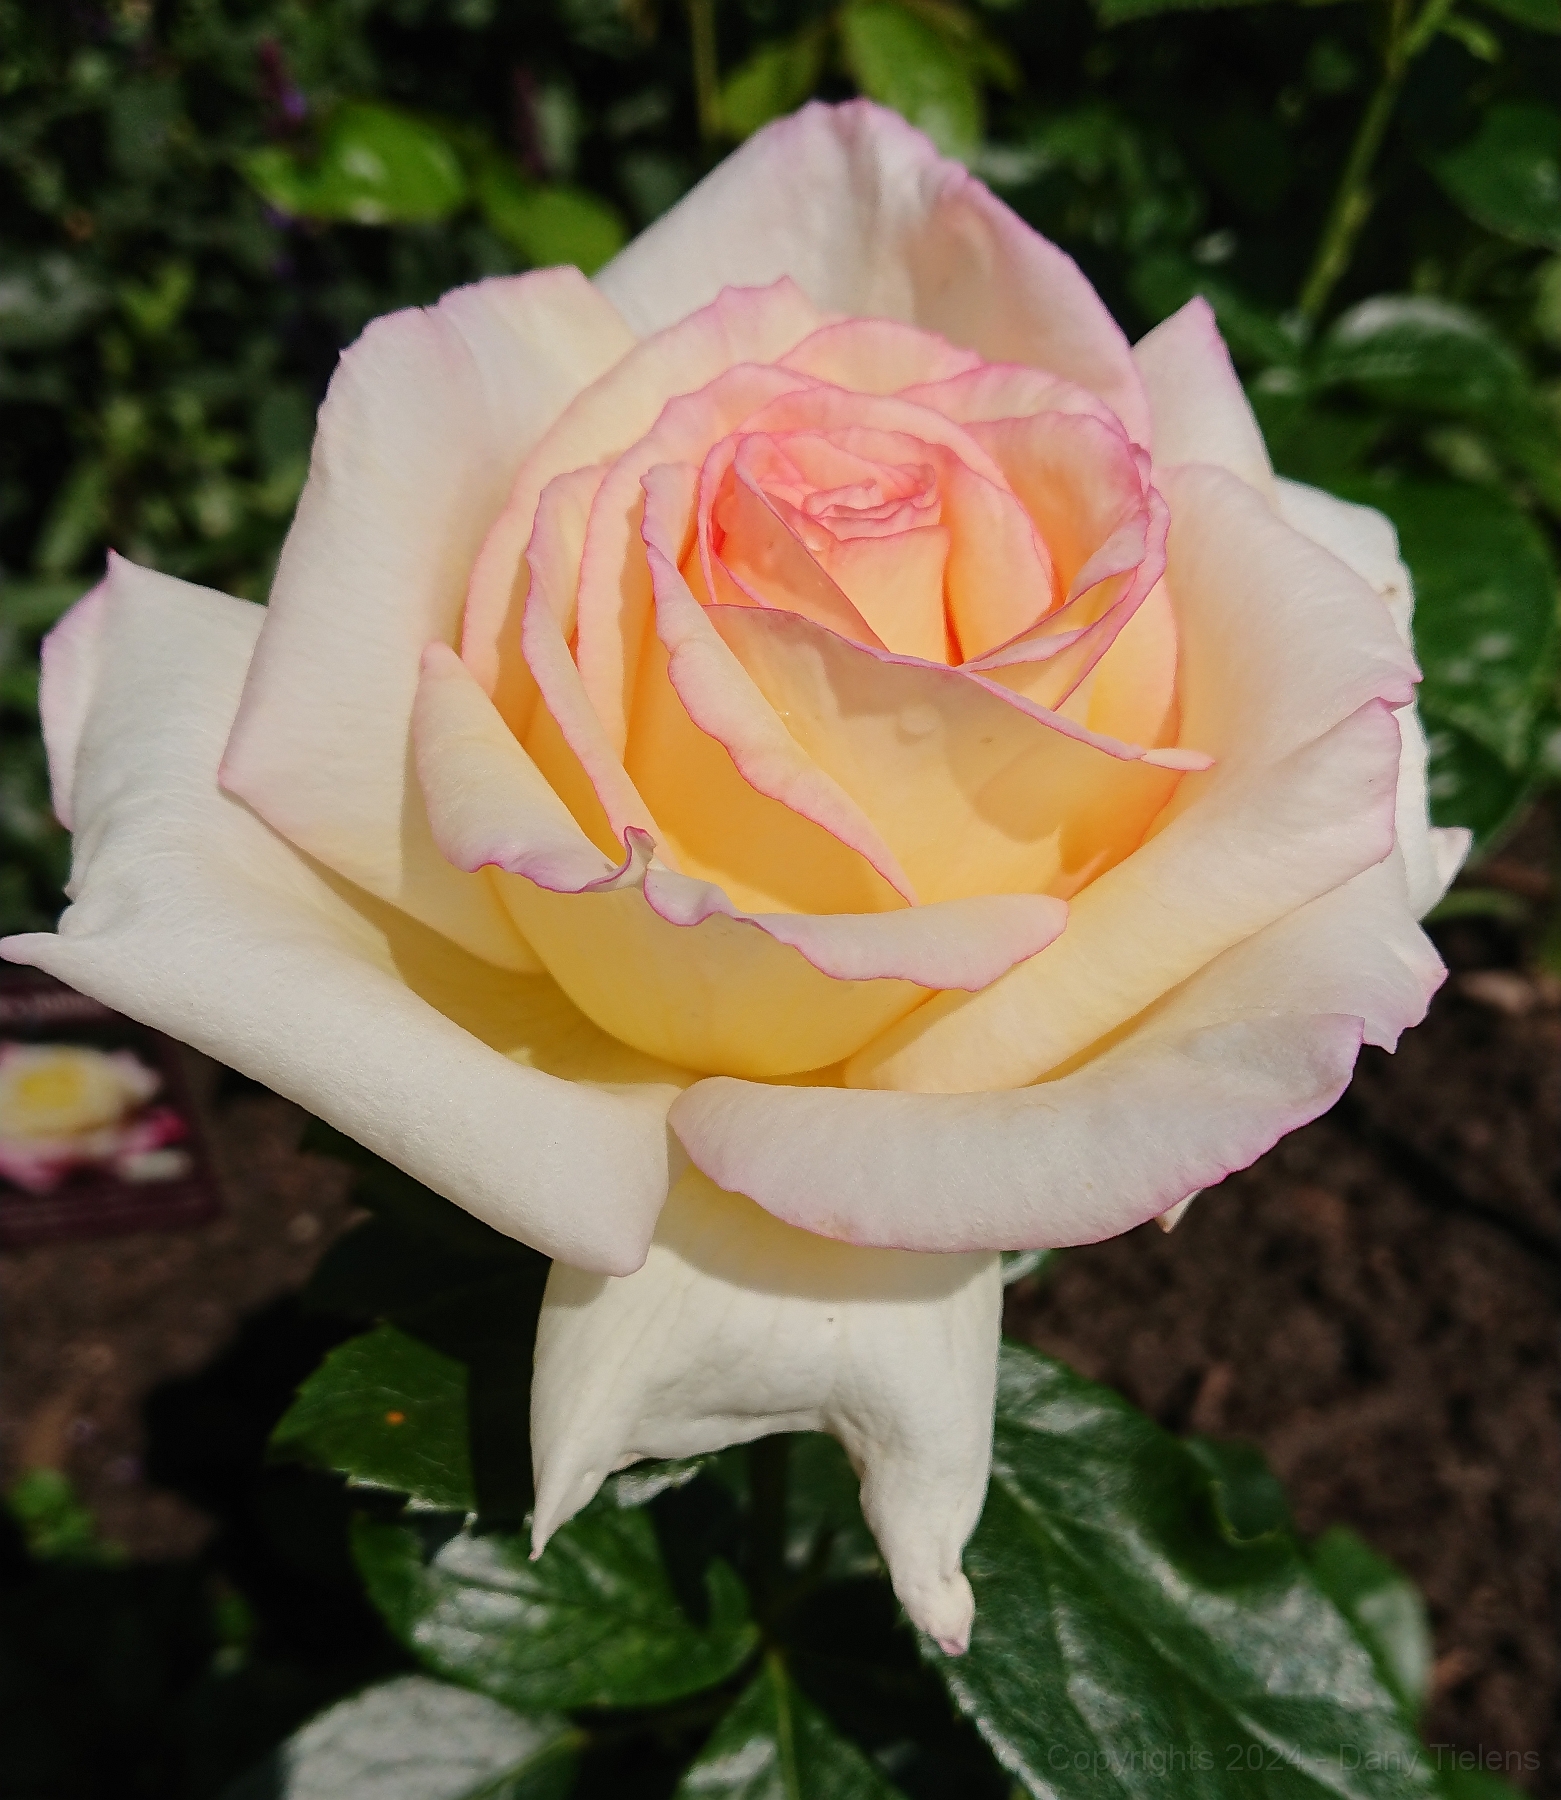 Rosa 'Souvenir de Baden- Baden' 2019 - 001.JPG